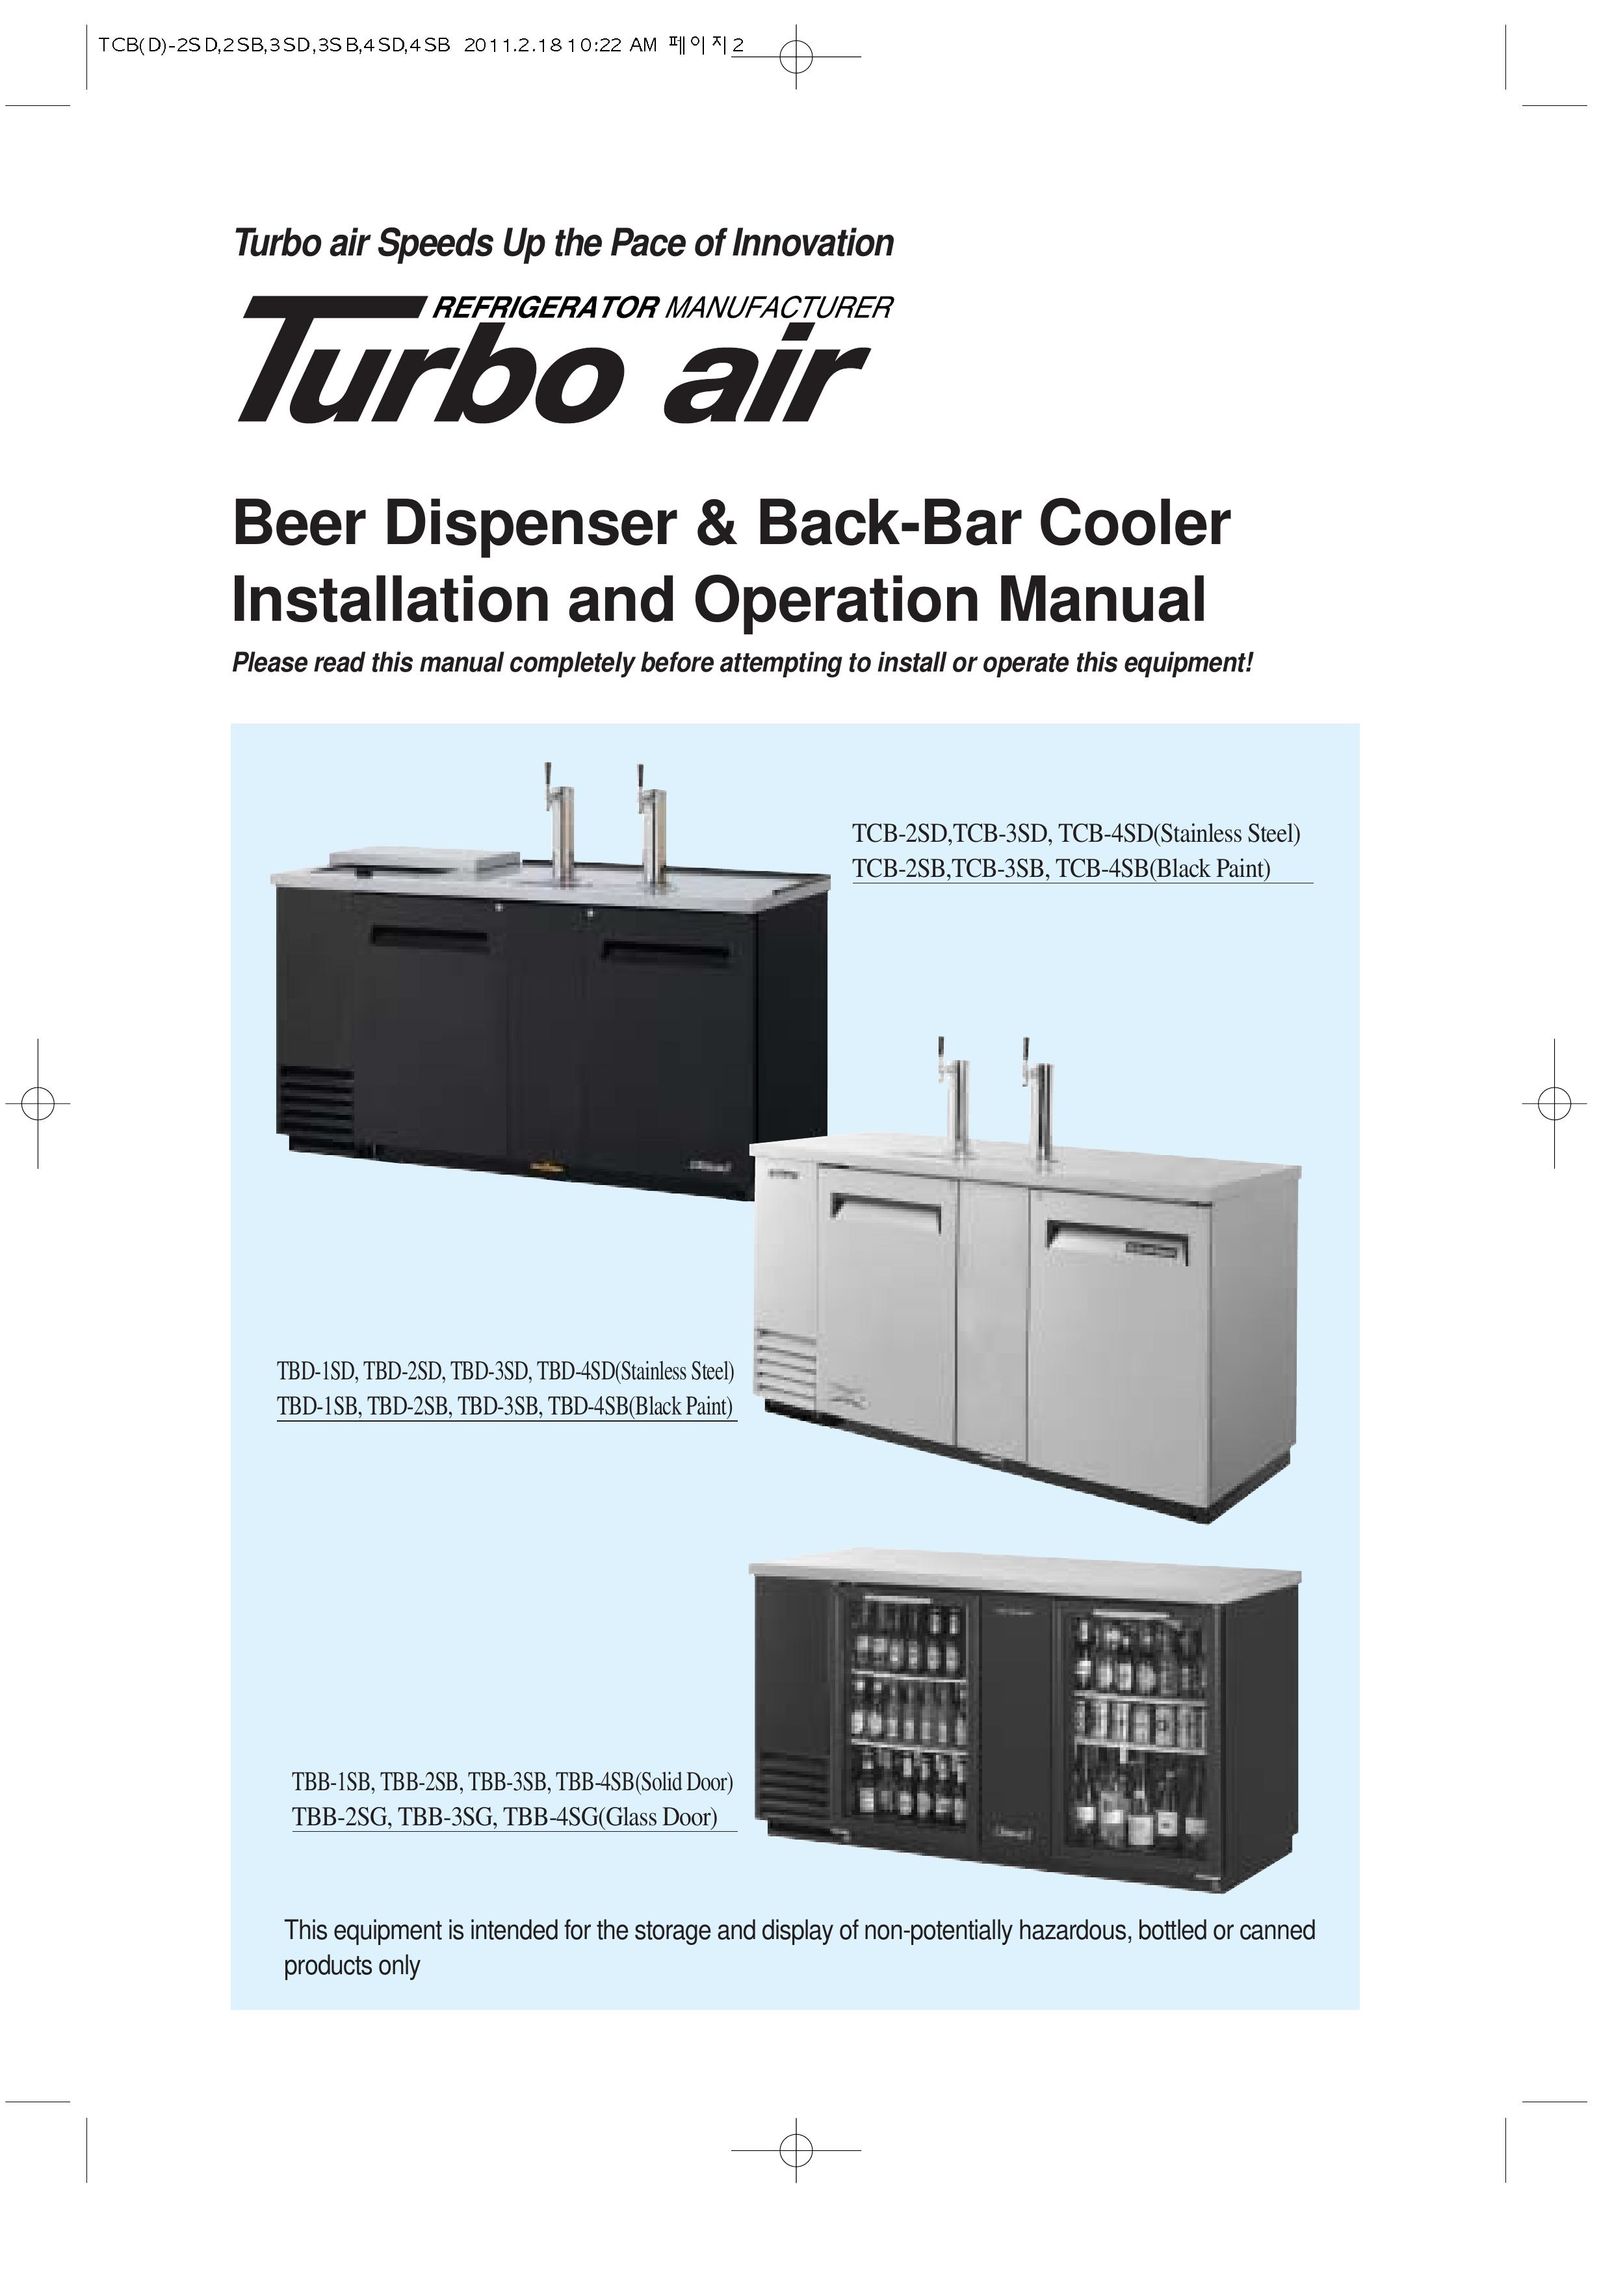 Turbo Air TCB-4SB Beverage Dispenser User Manual